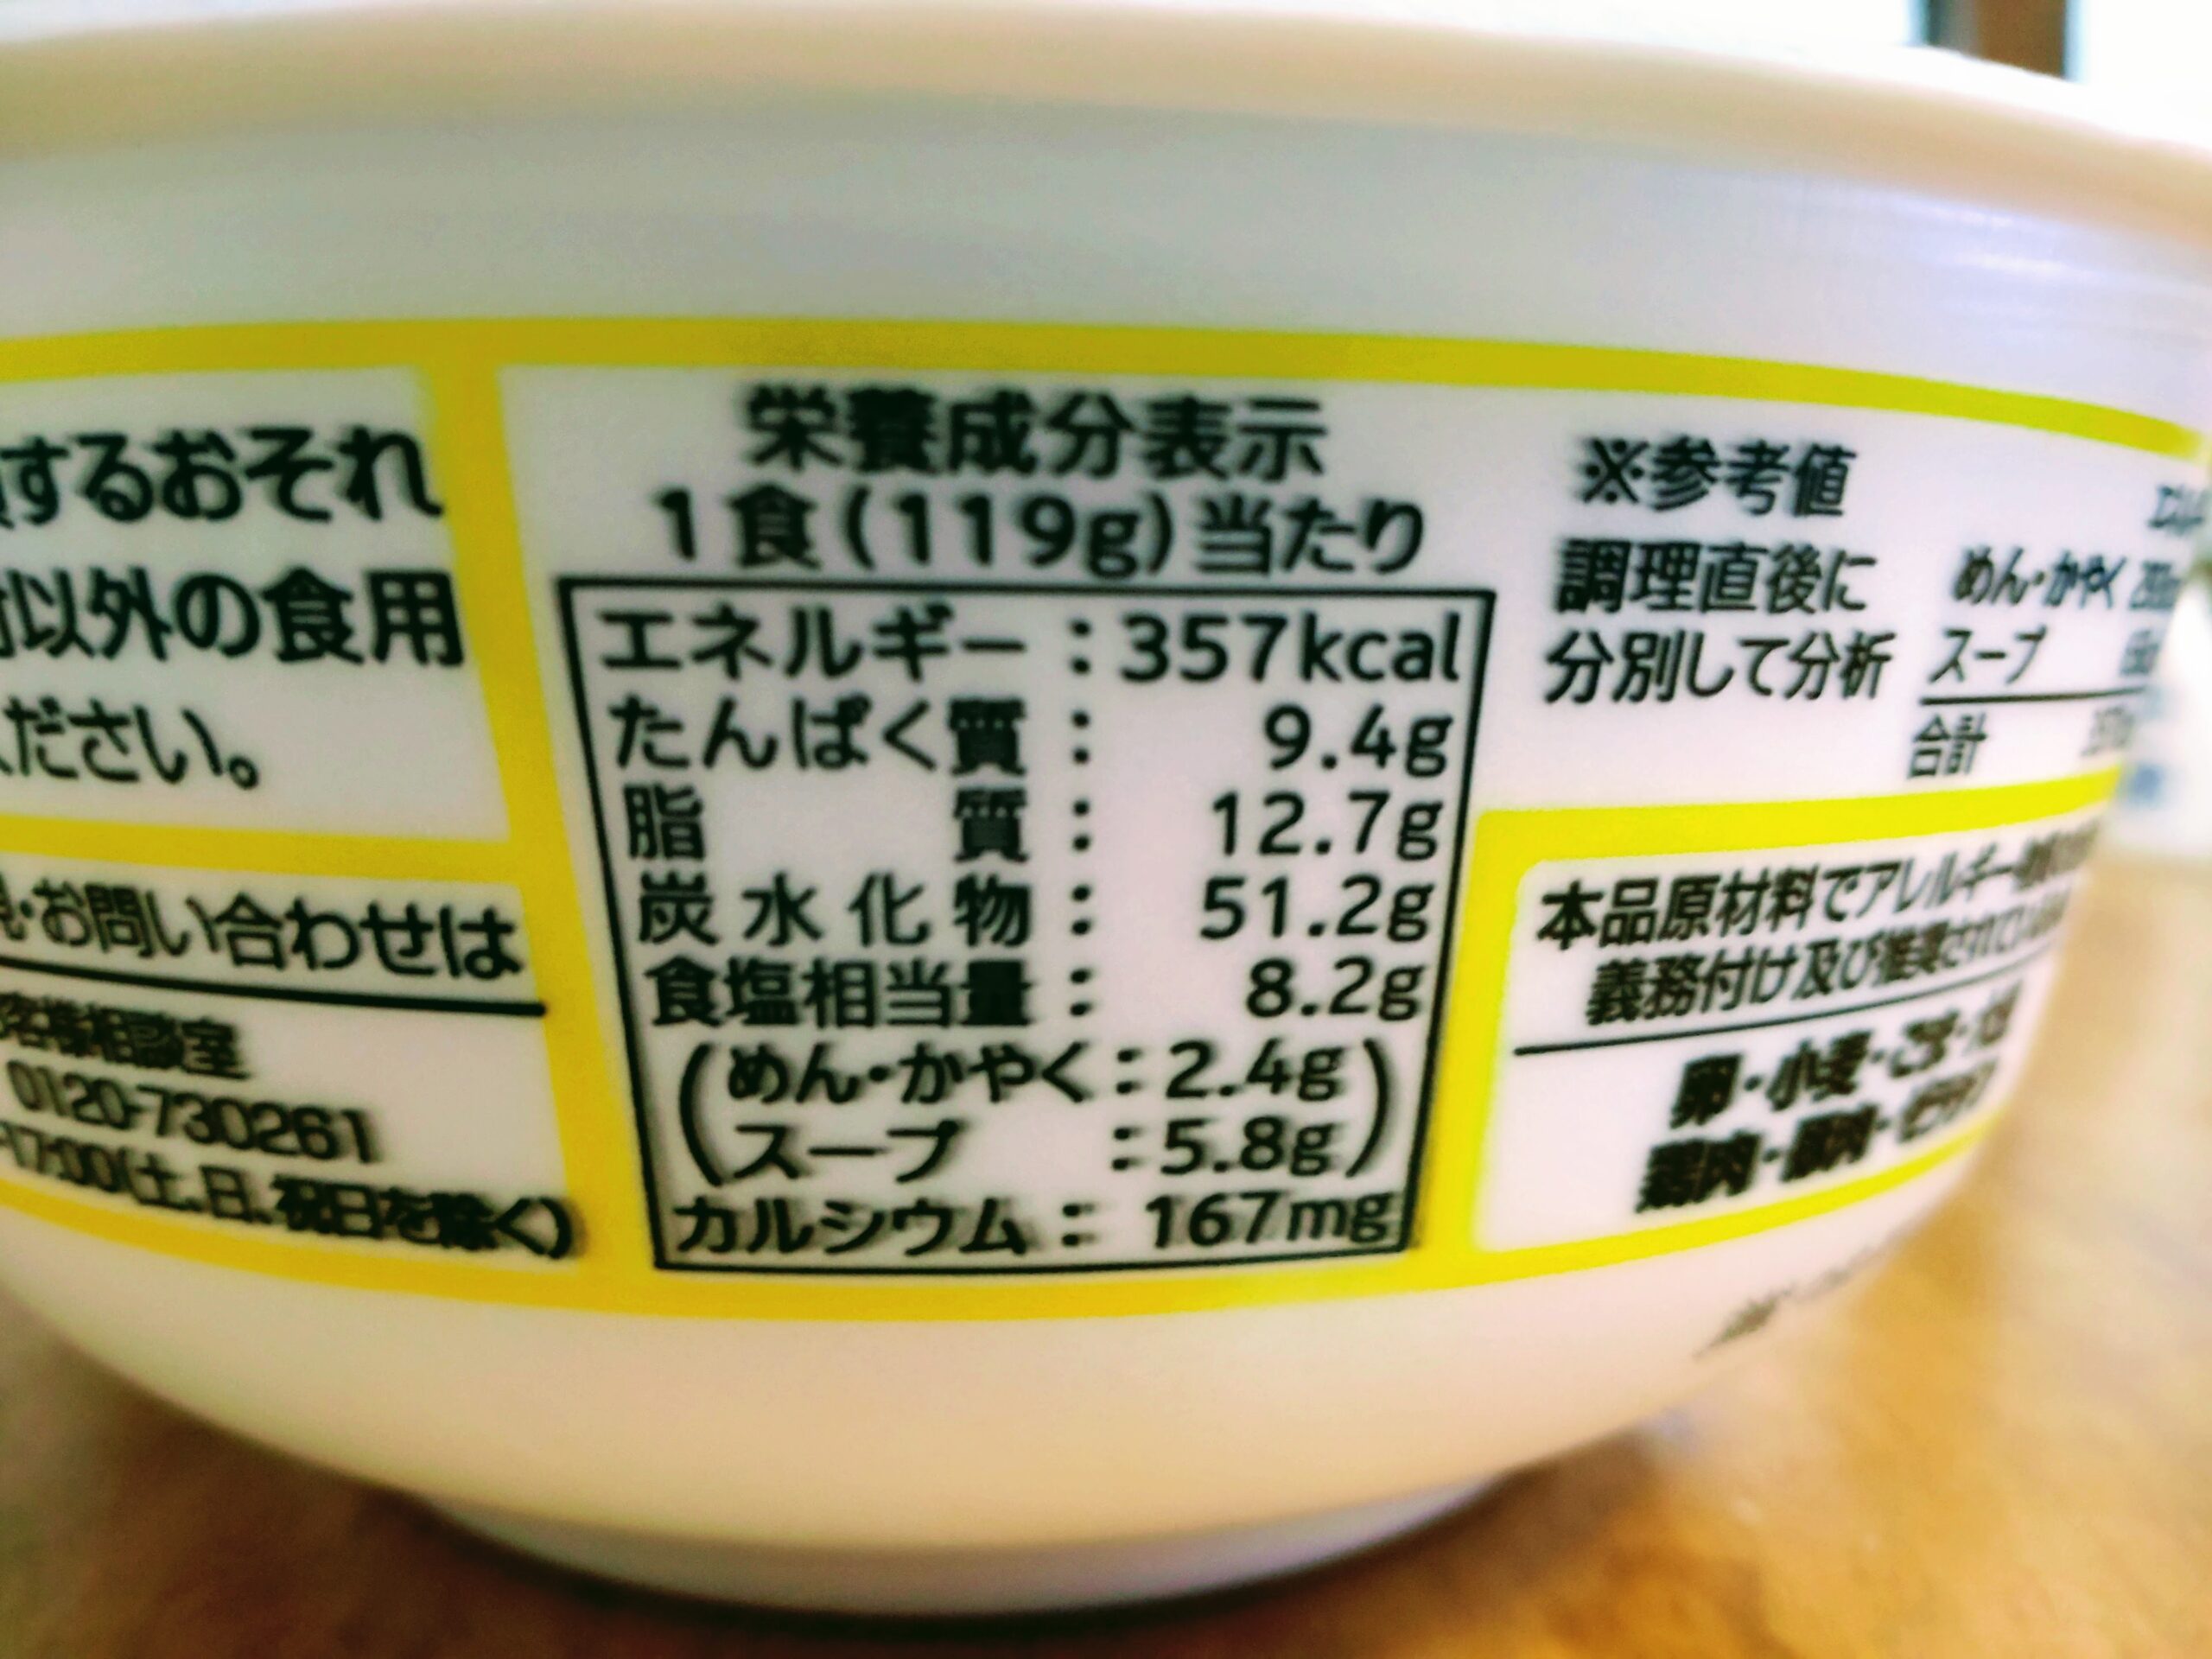 カップ岐阜タンメンの栄養成分表示